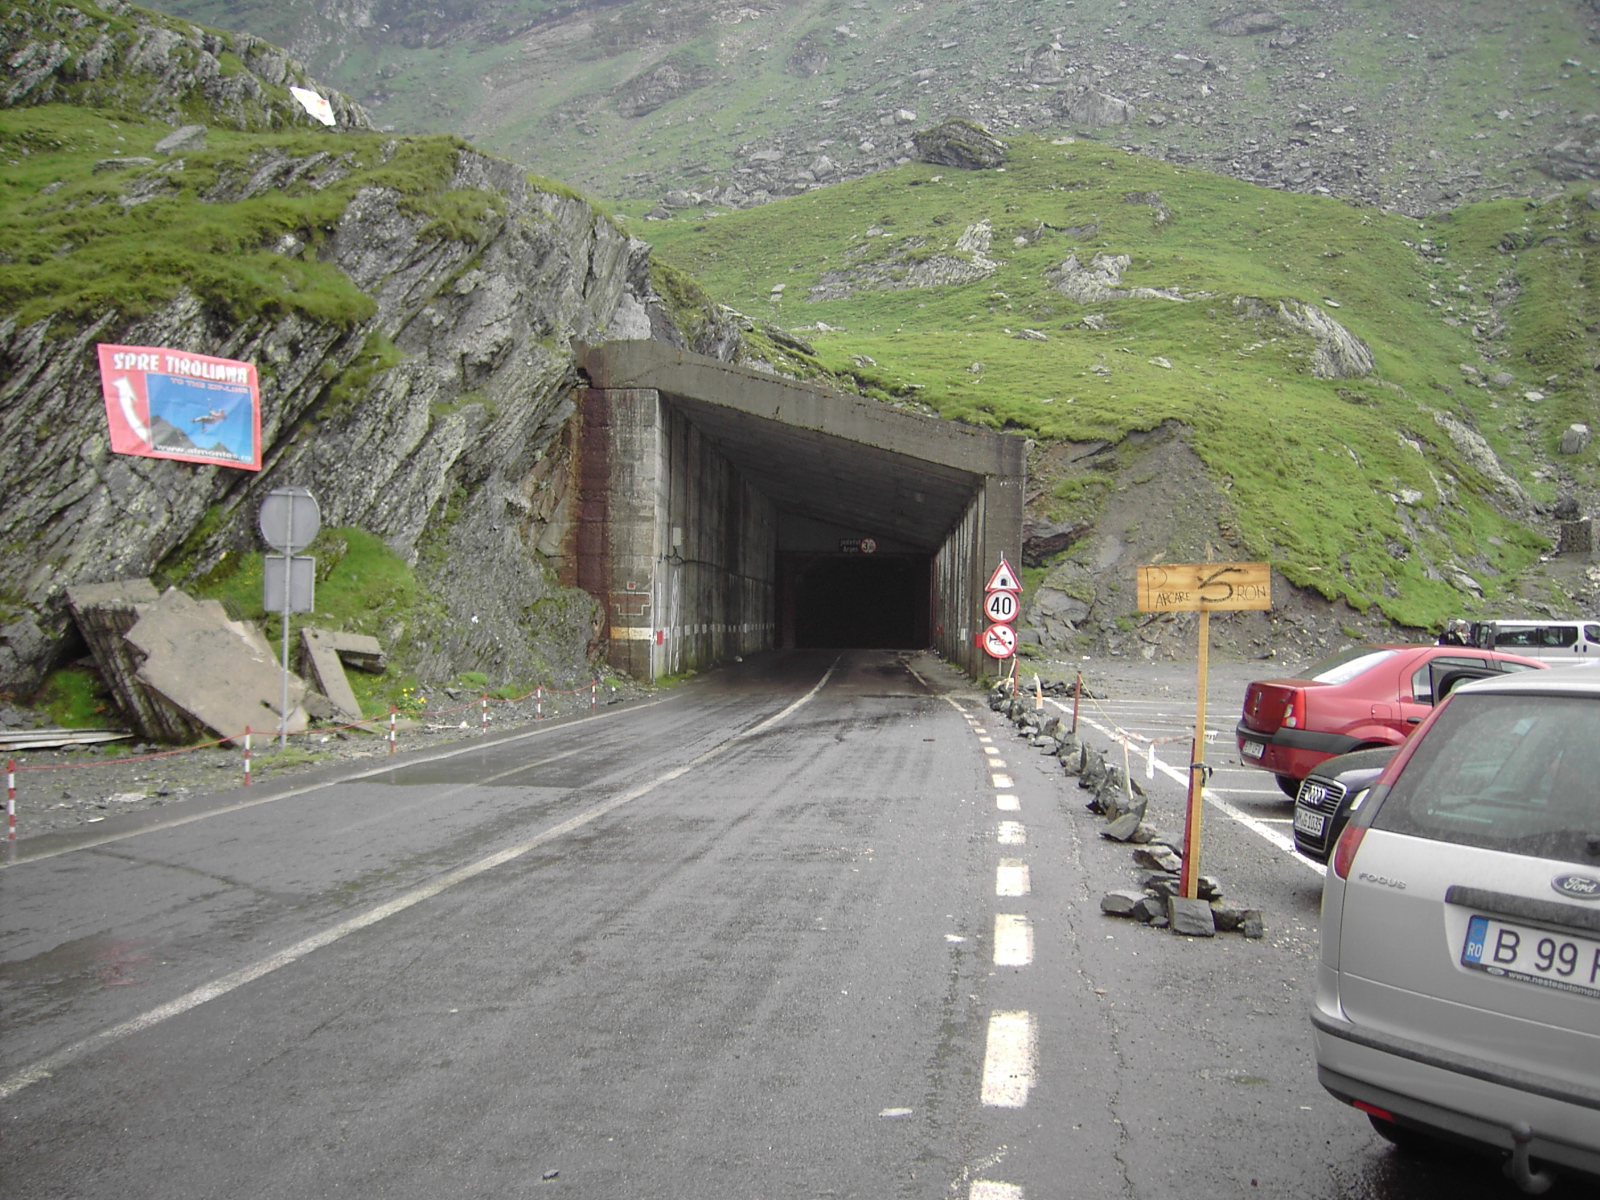 The Transfagarasan Tunnel